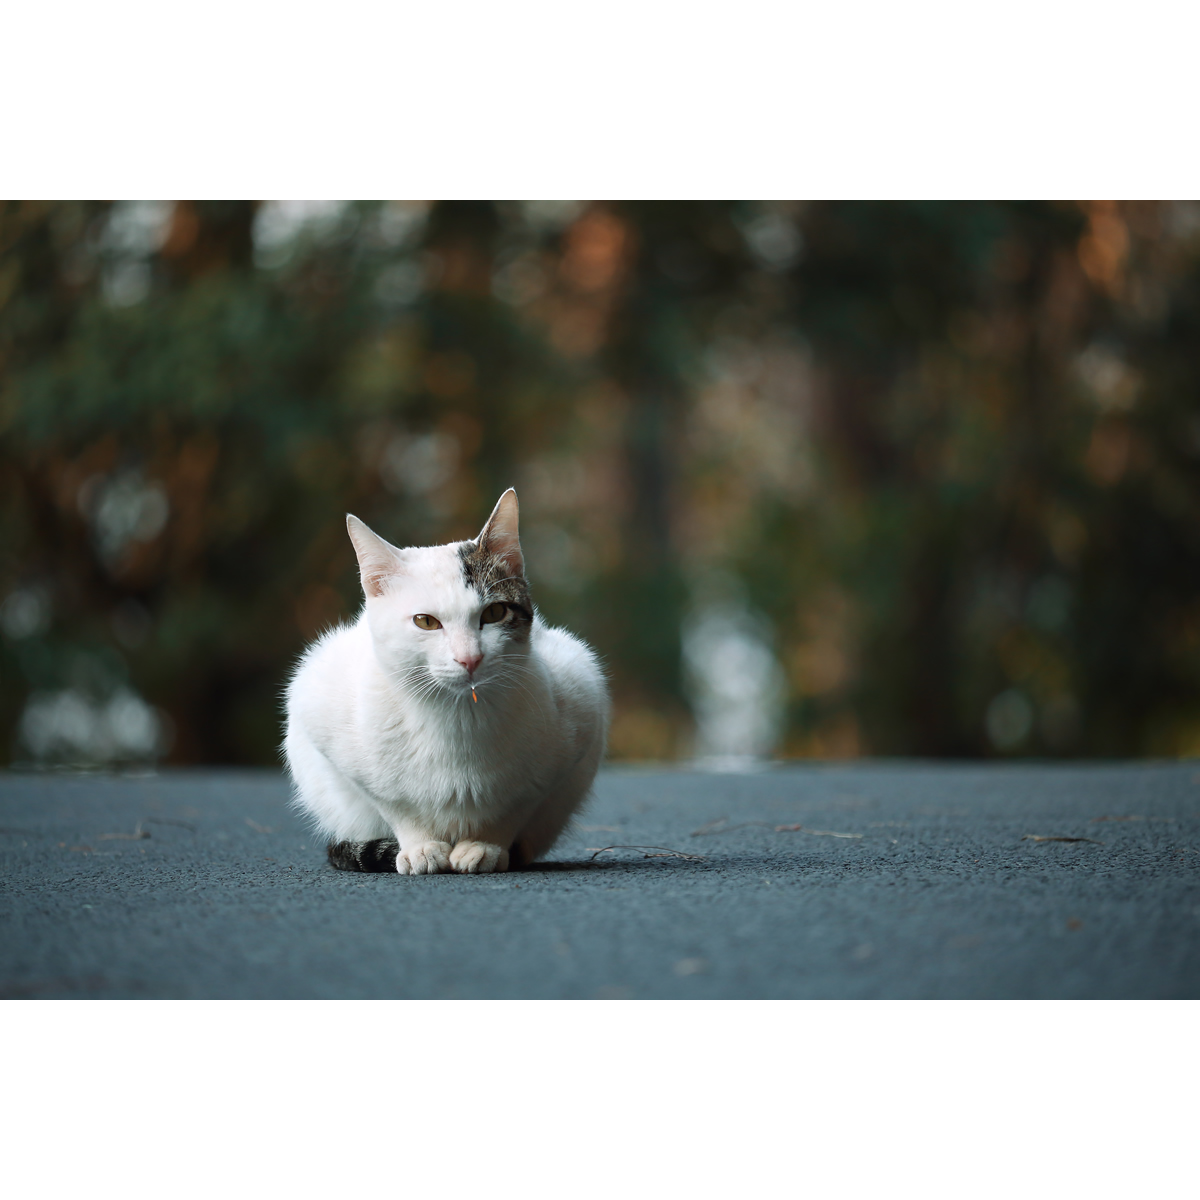 原创生态摄影作品-白猫/猫咪宠物(1张) 高清动物设计素材/PS图片